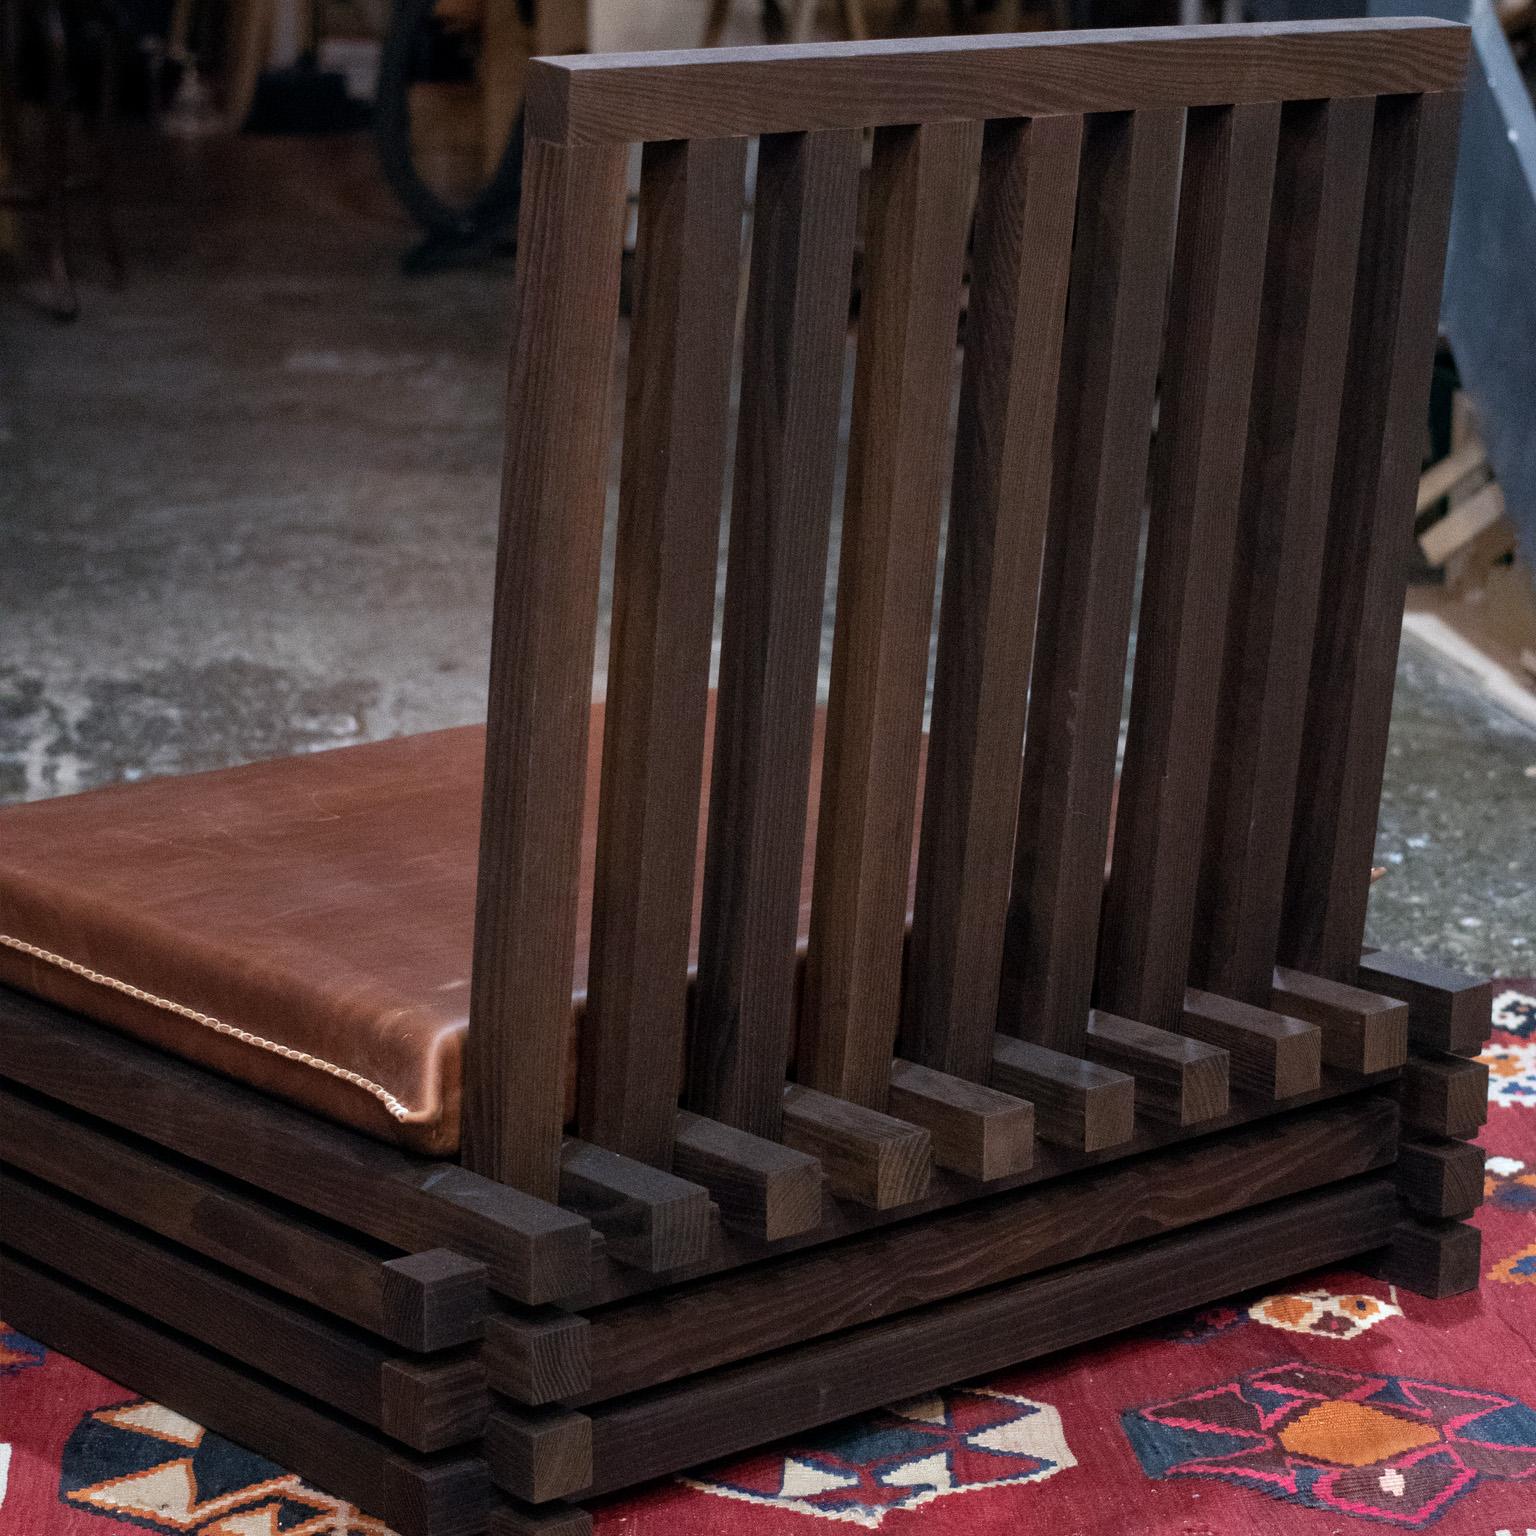 Der ekosi-Stuhl ist ein perfektes Beispiel für die Kraft der Einfachheit. Bei diesem Entwurf haben wir unseren Bodenstuhl auf seine Kernelemente reduziert, um ein Stück zu schaffen, das sowohl elegant als auch funktional ist.

Unser Ekosi-Stuhl